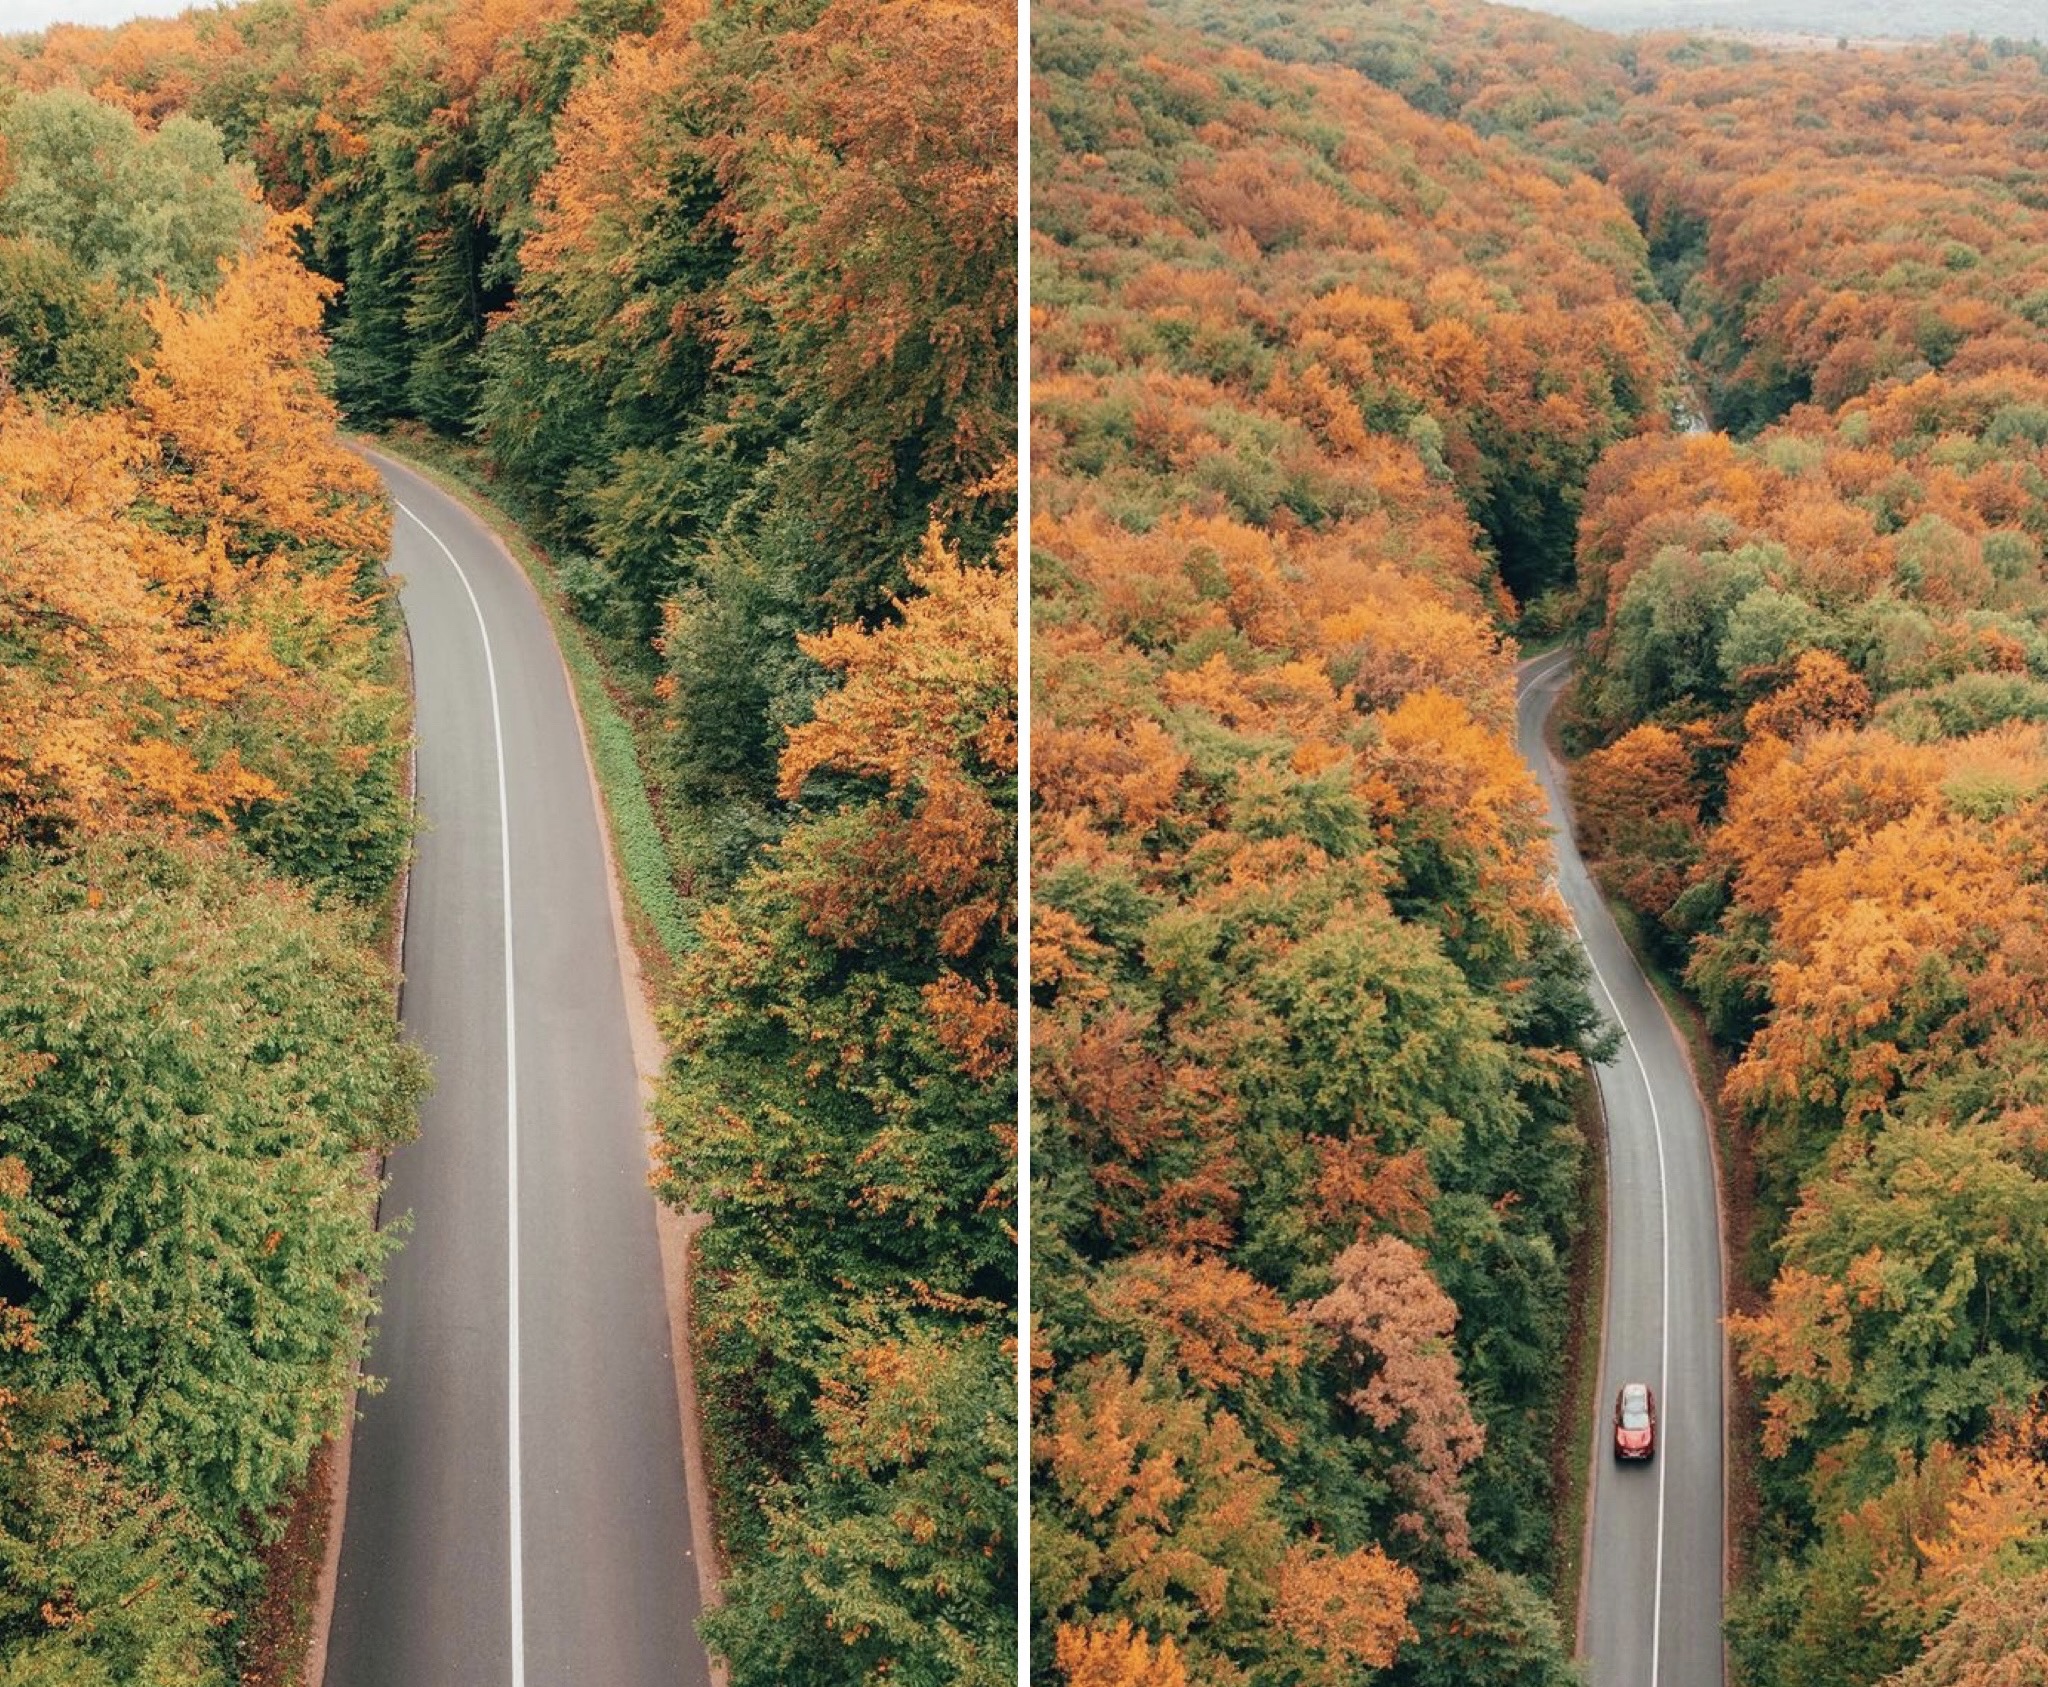 Imagini superbe filmate cu drona in Făget. Padurea isi schimba culoarea. VIDEO